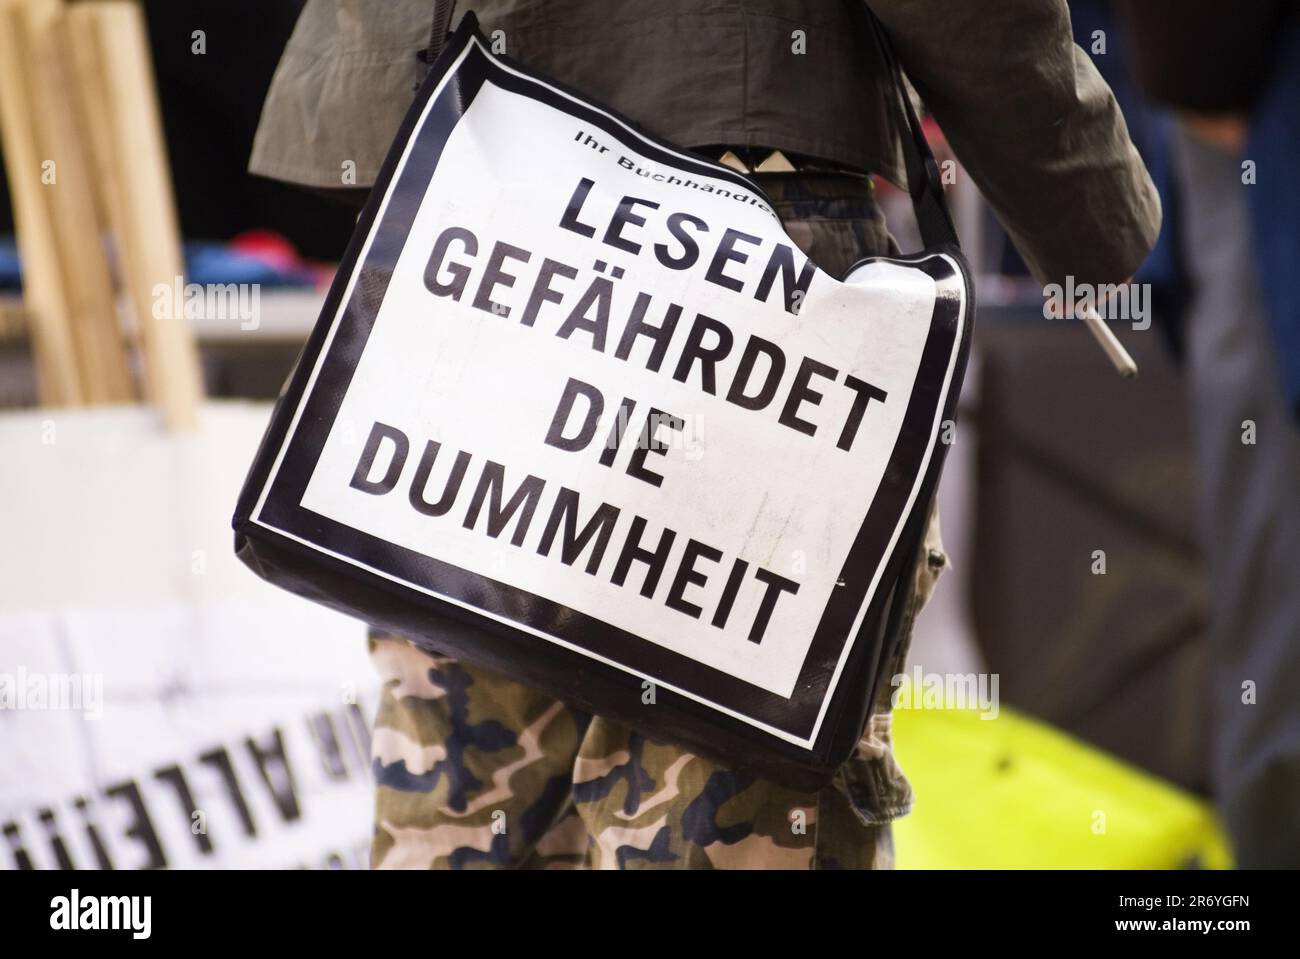 Wien, Österreich. 11. Oktober 2008. Demonstration des Aufenthaltsrechts in Wien. Aufschrift „Lesen von Gefahren Dummheit“ Stockfoto